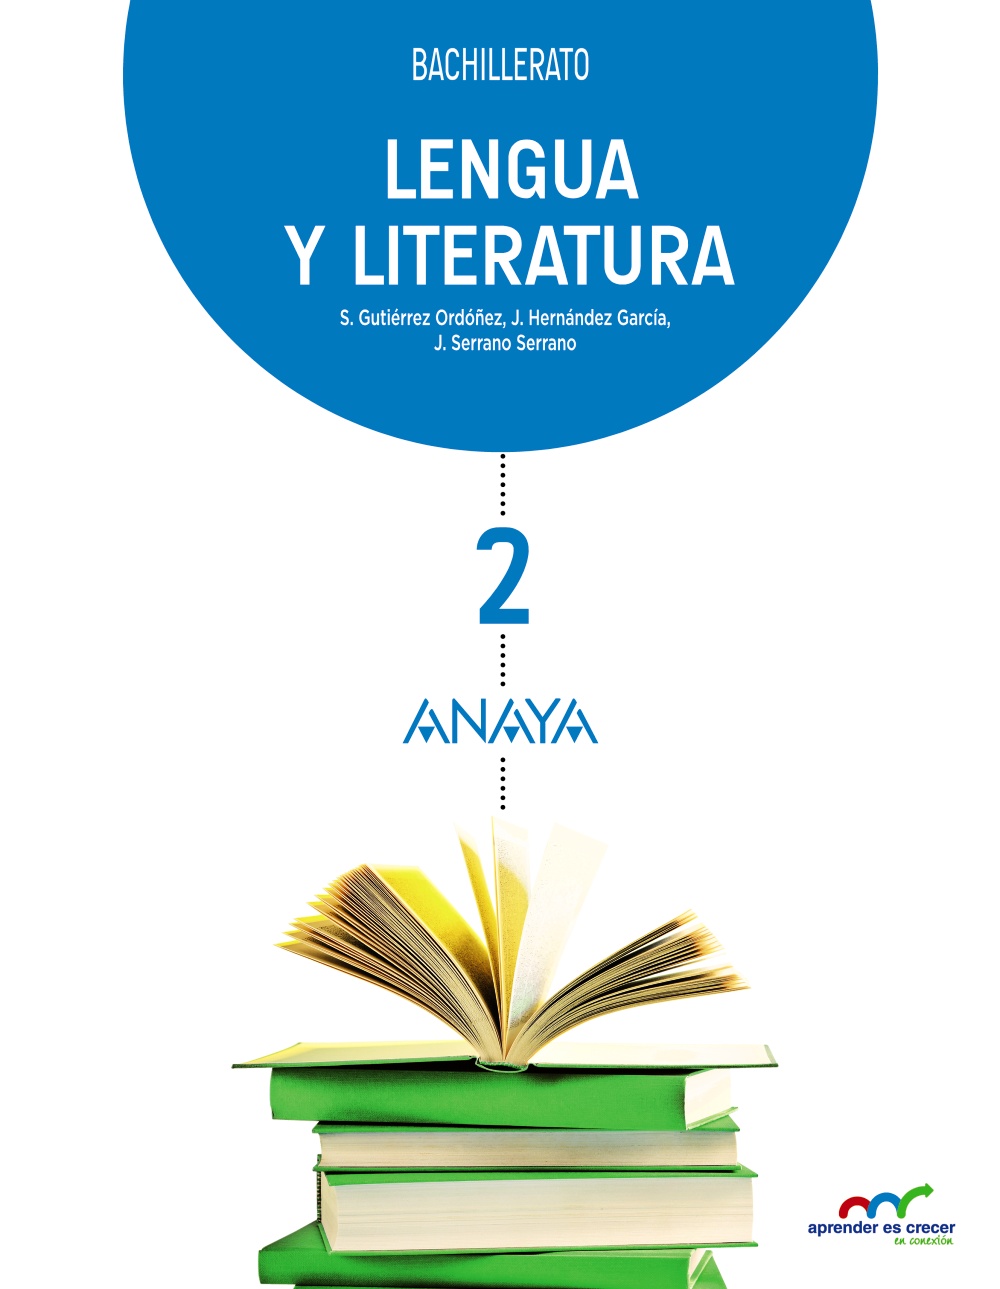 Solucionario Lengua y Literatura 2 Bachillerato Anaya Aprender es Crecer PDF Ejercicios Resueltos-pdf